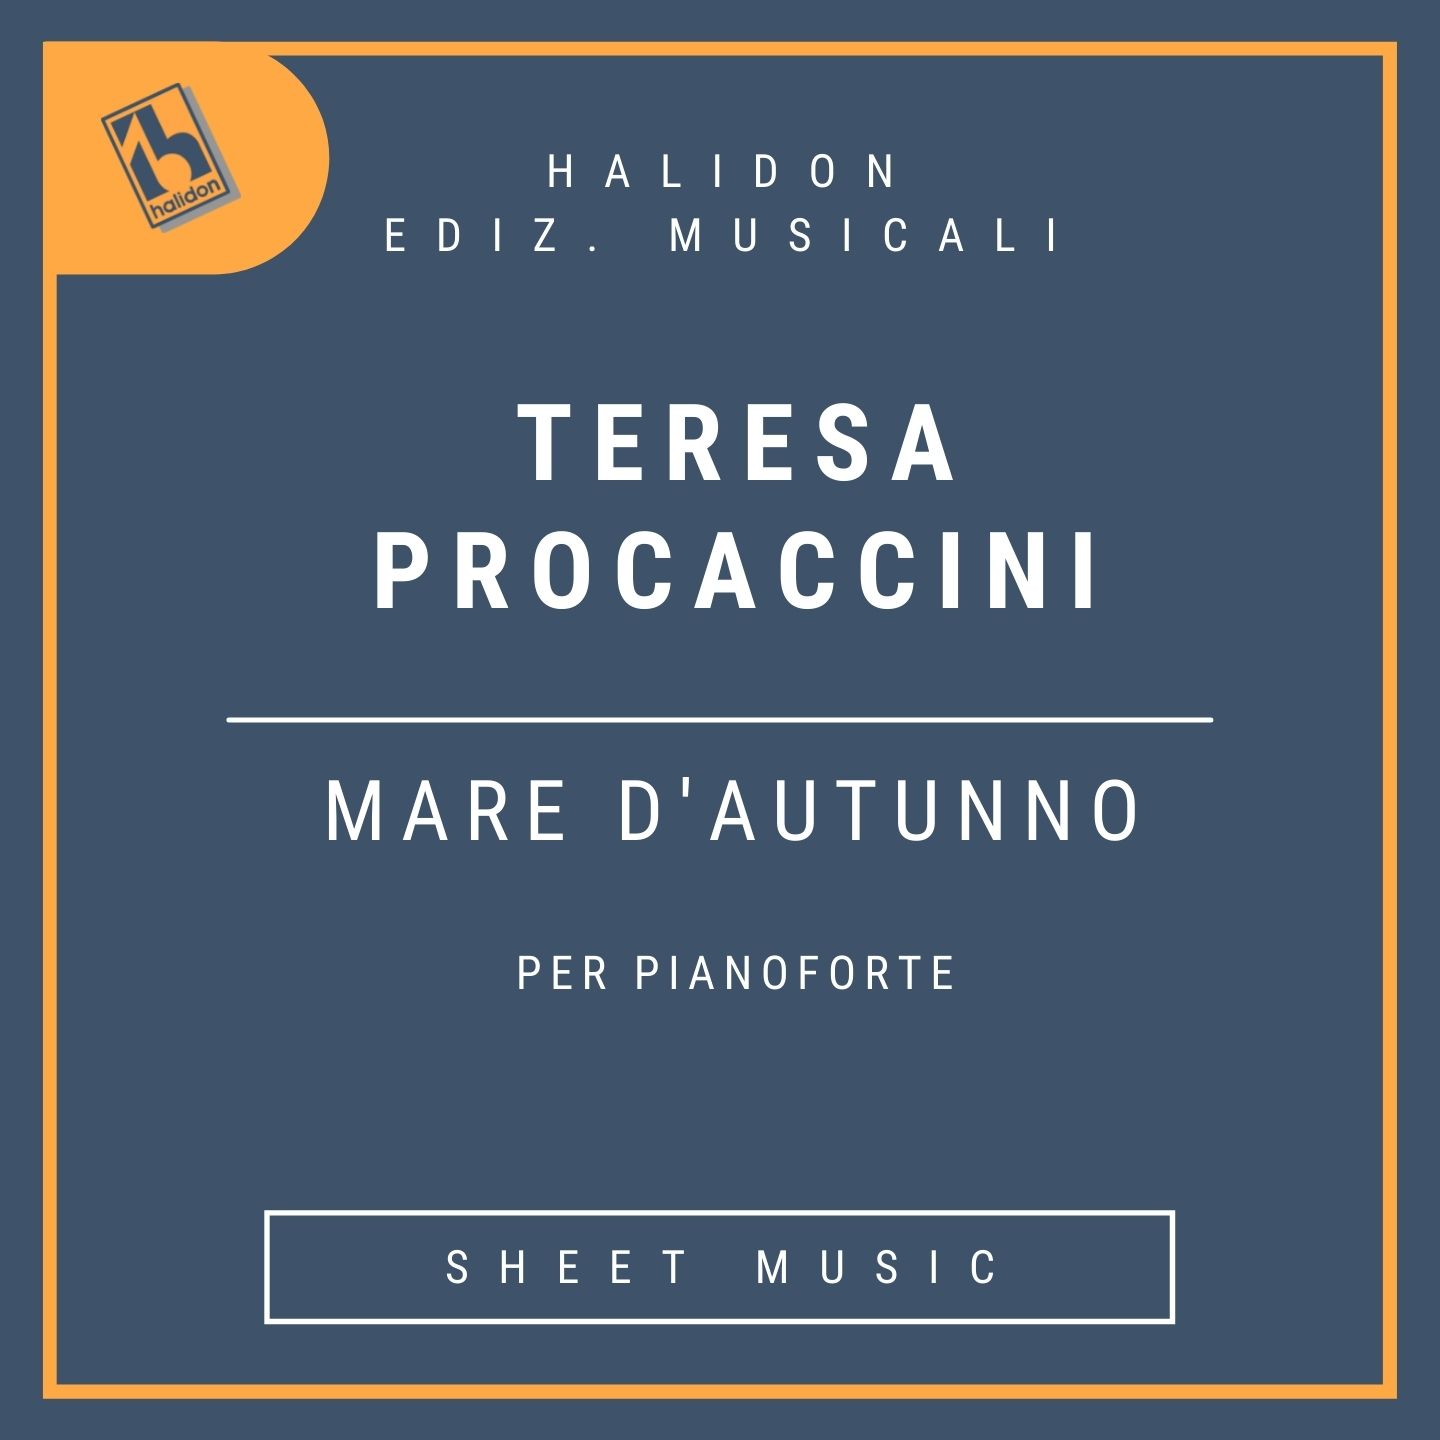 Teresa Procaccini - Mare d'autunno